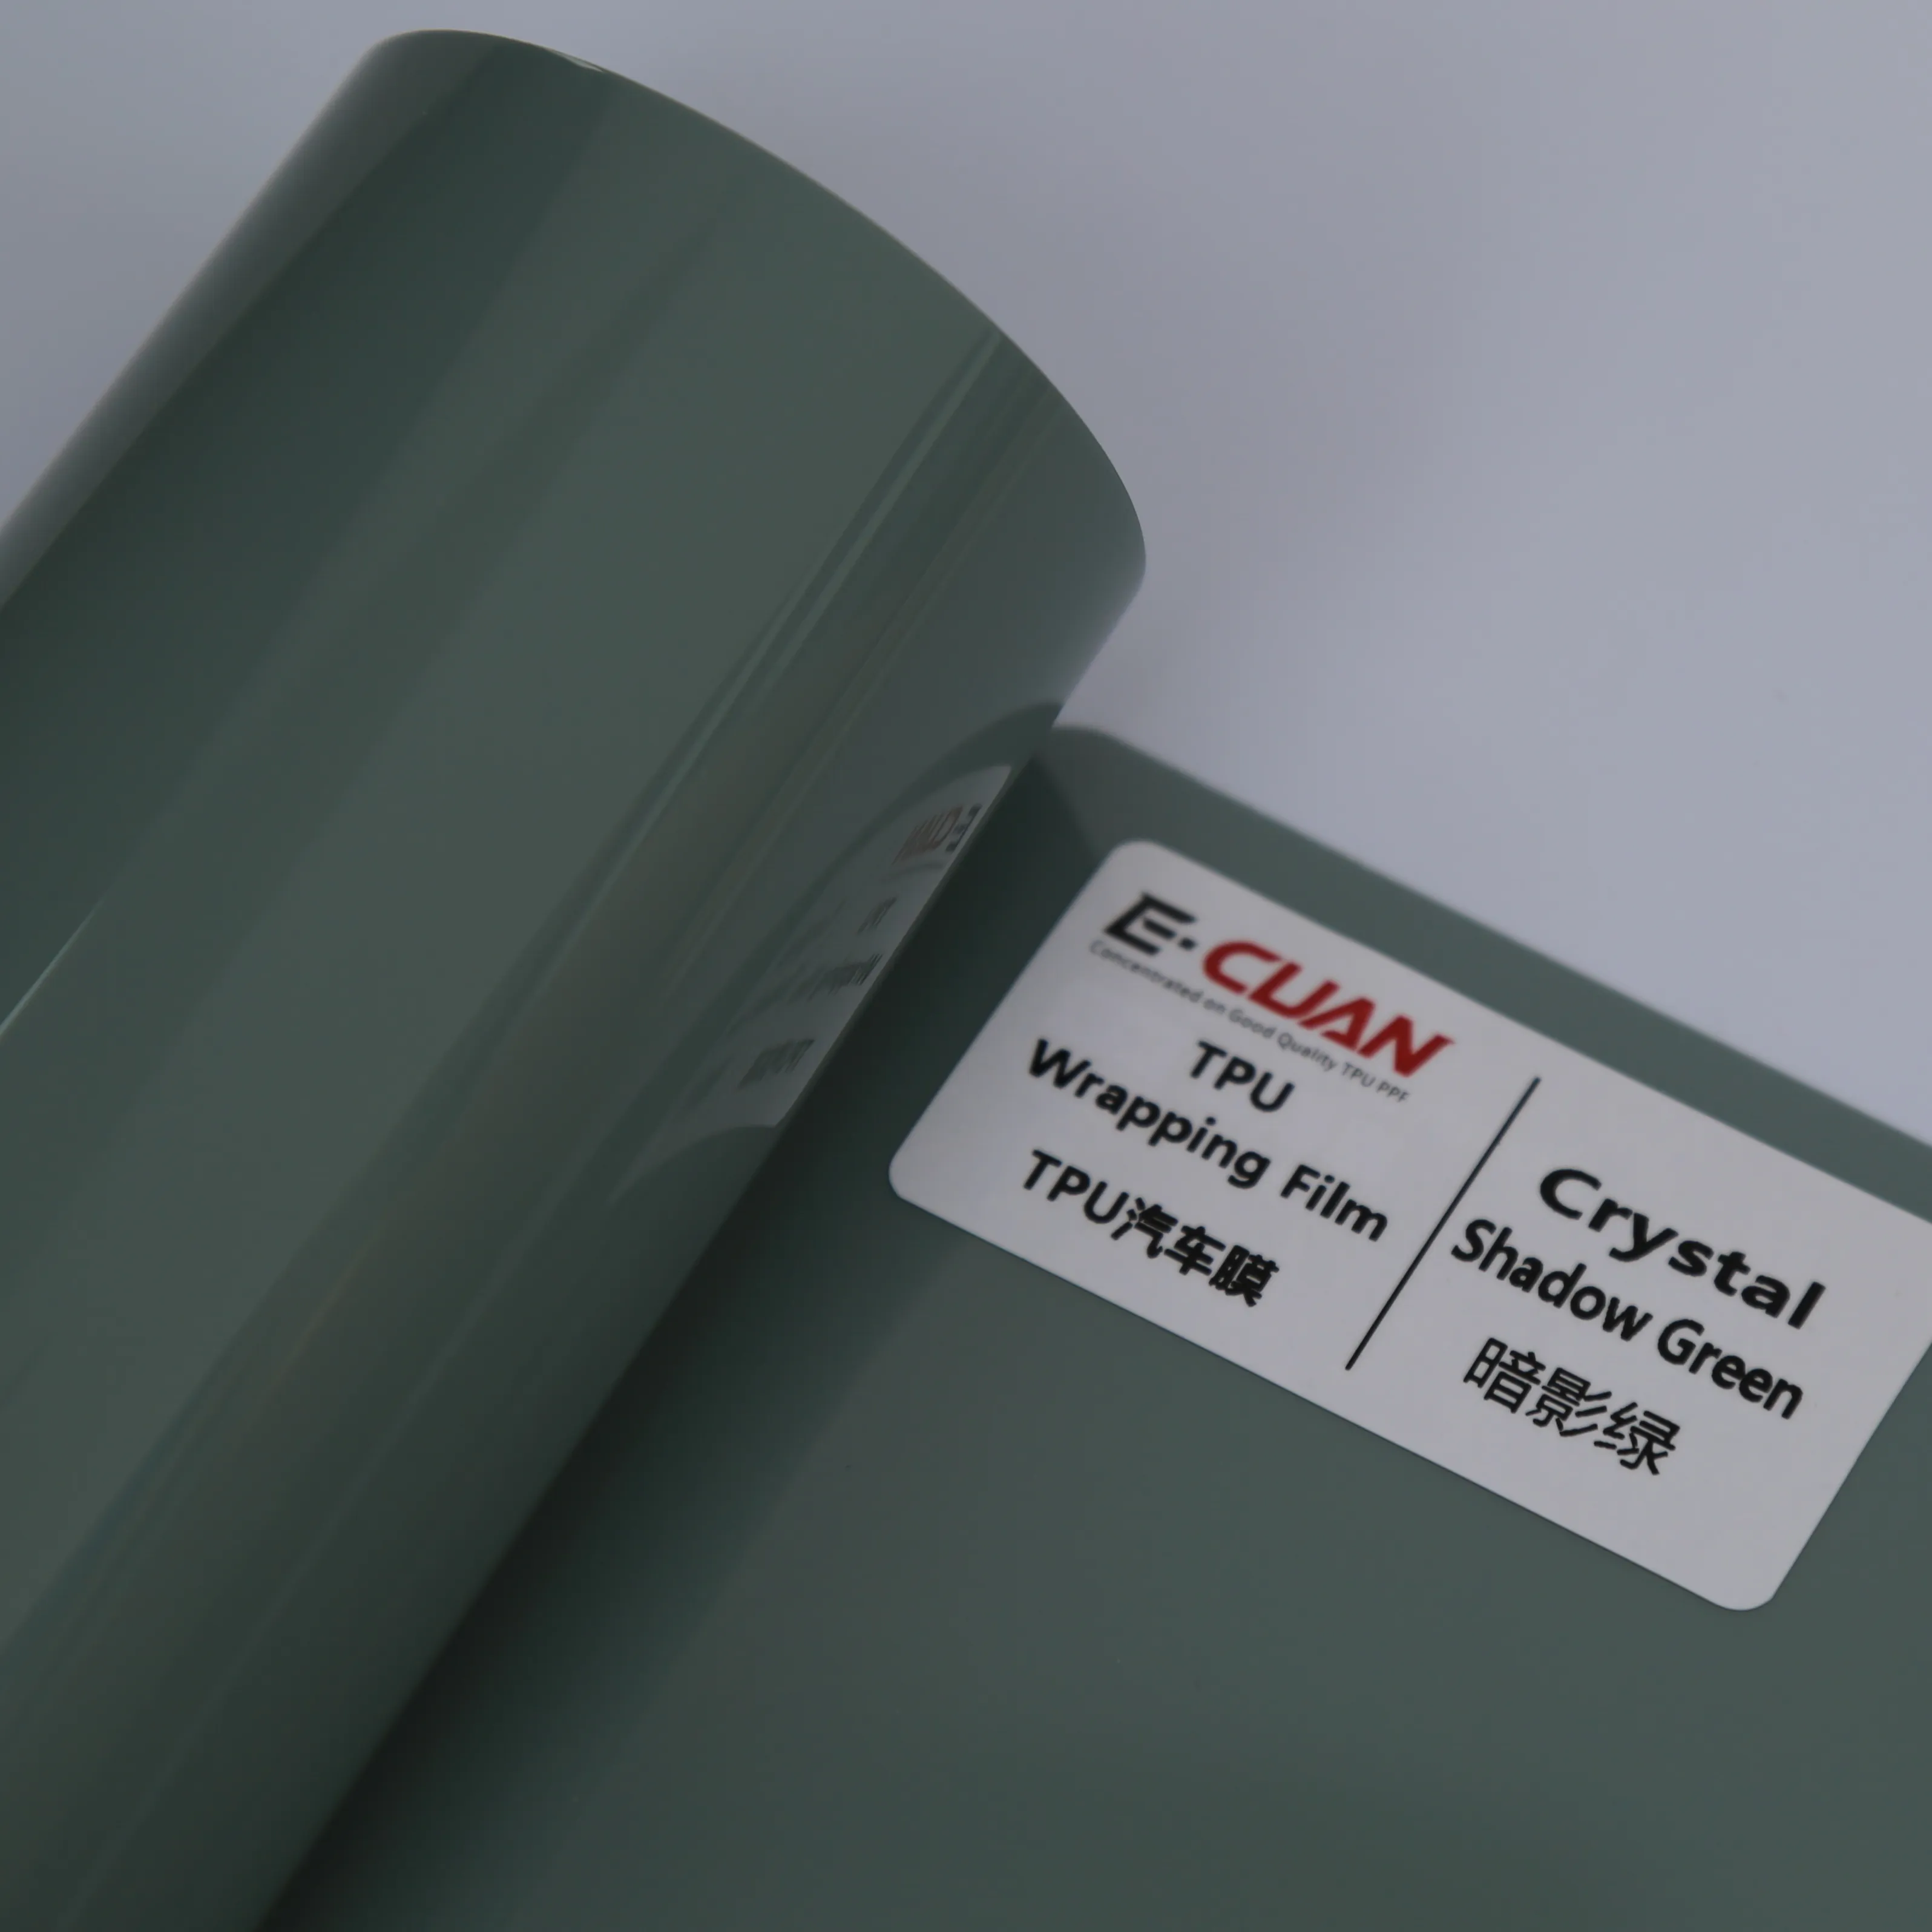 E-CUAN оптовая продажа с фабрики, металлическая хромированная виниловая пленка для автомобиля, меняющая цвет, кристальная тень зеленого цвета